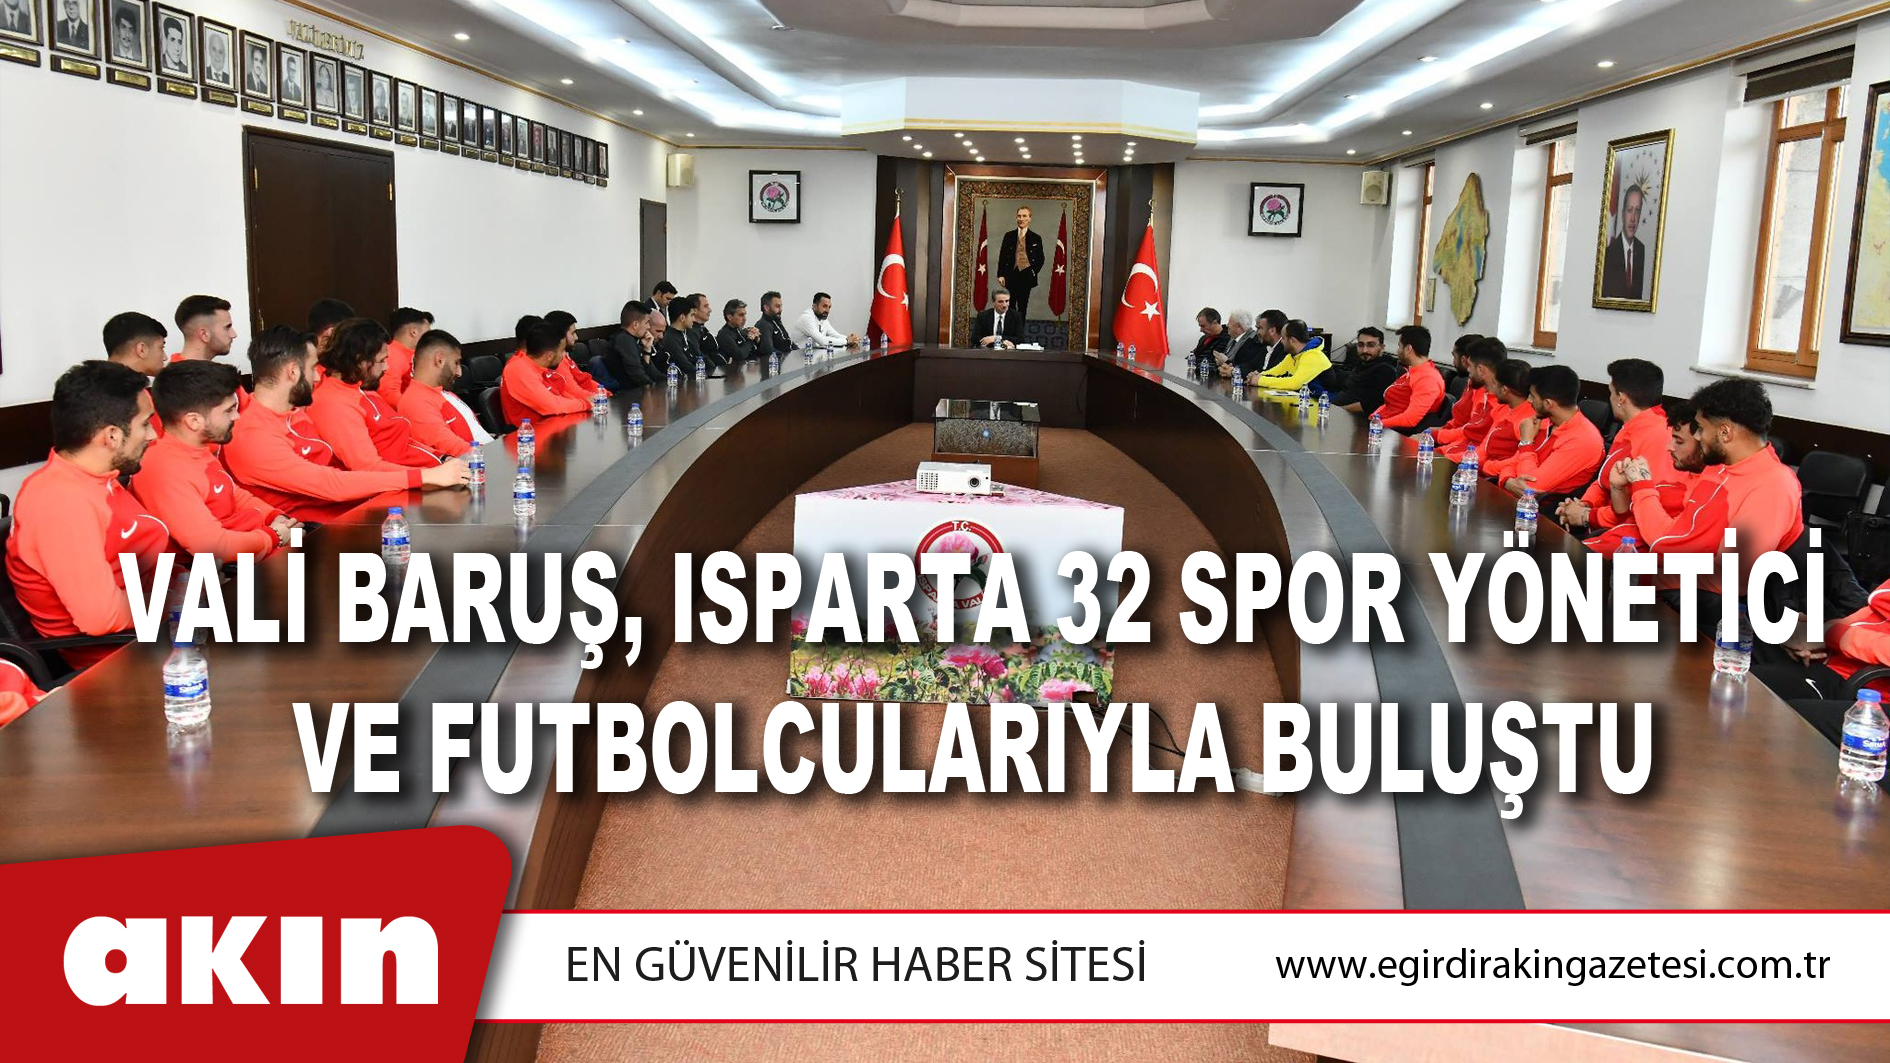 Vali Baruş, Isparta 32 Spor Yönetici Ve Futbolcularıyla Buluştu